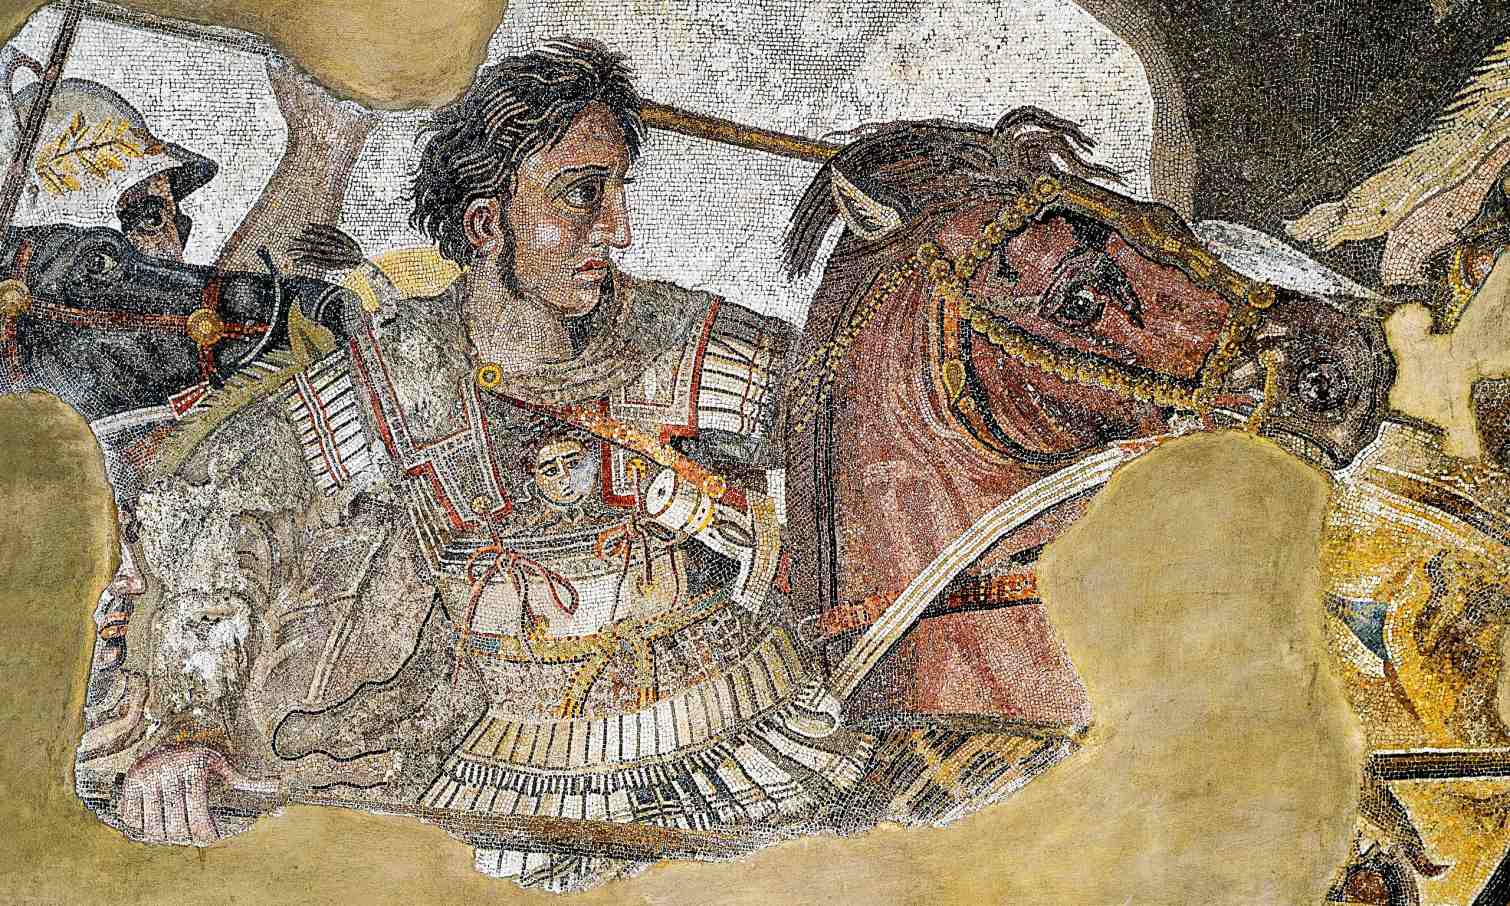 Александър Велики срещнал ли е „дракон“ в Индия? 2